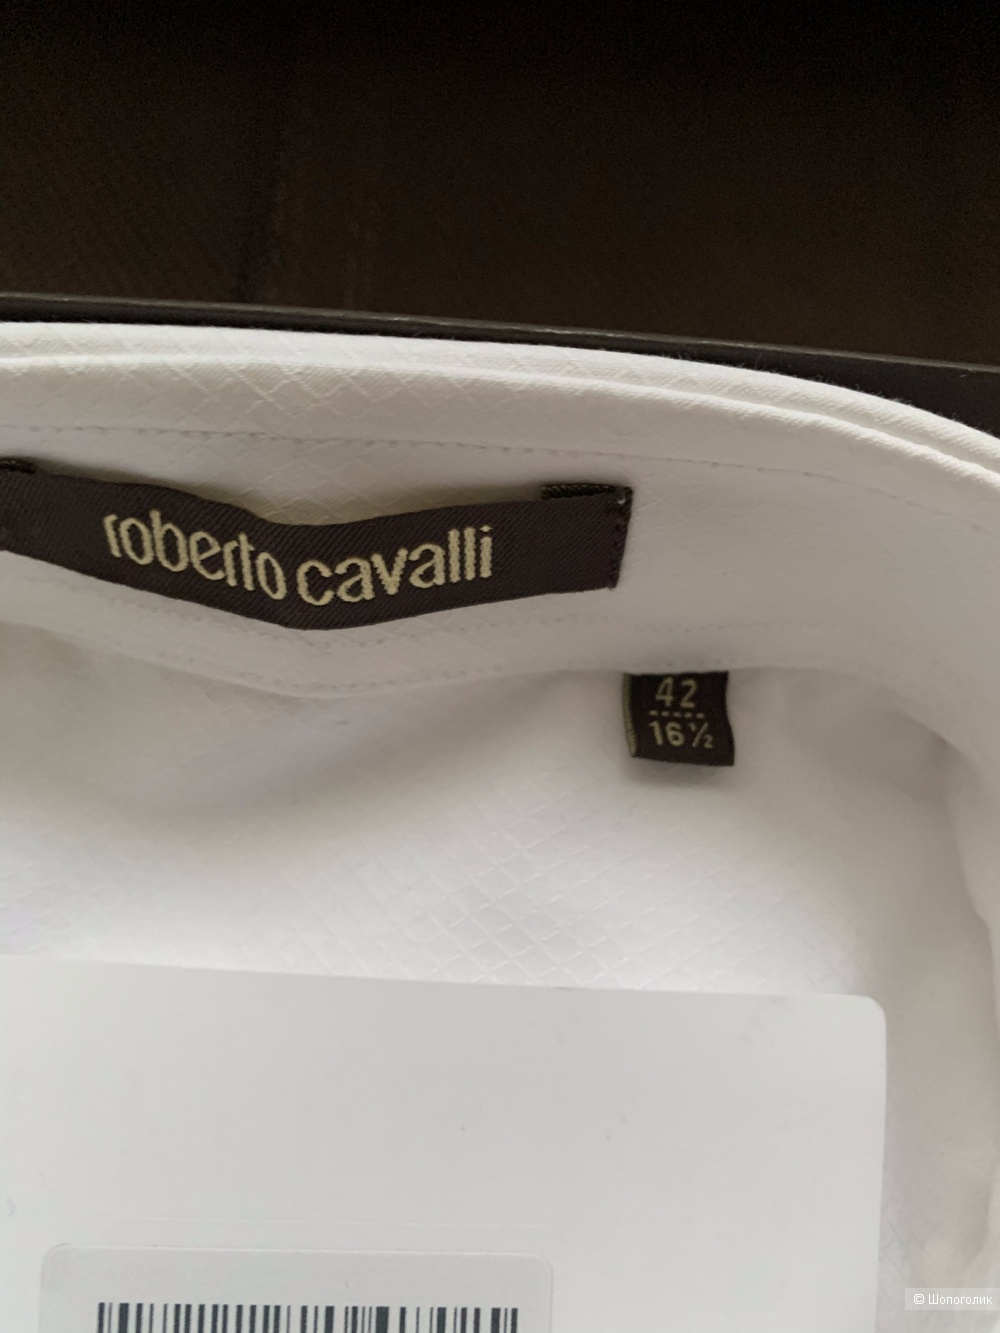 Мужская рубашка Roberto Cavalli,42 р-р по воротнику